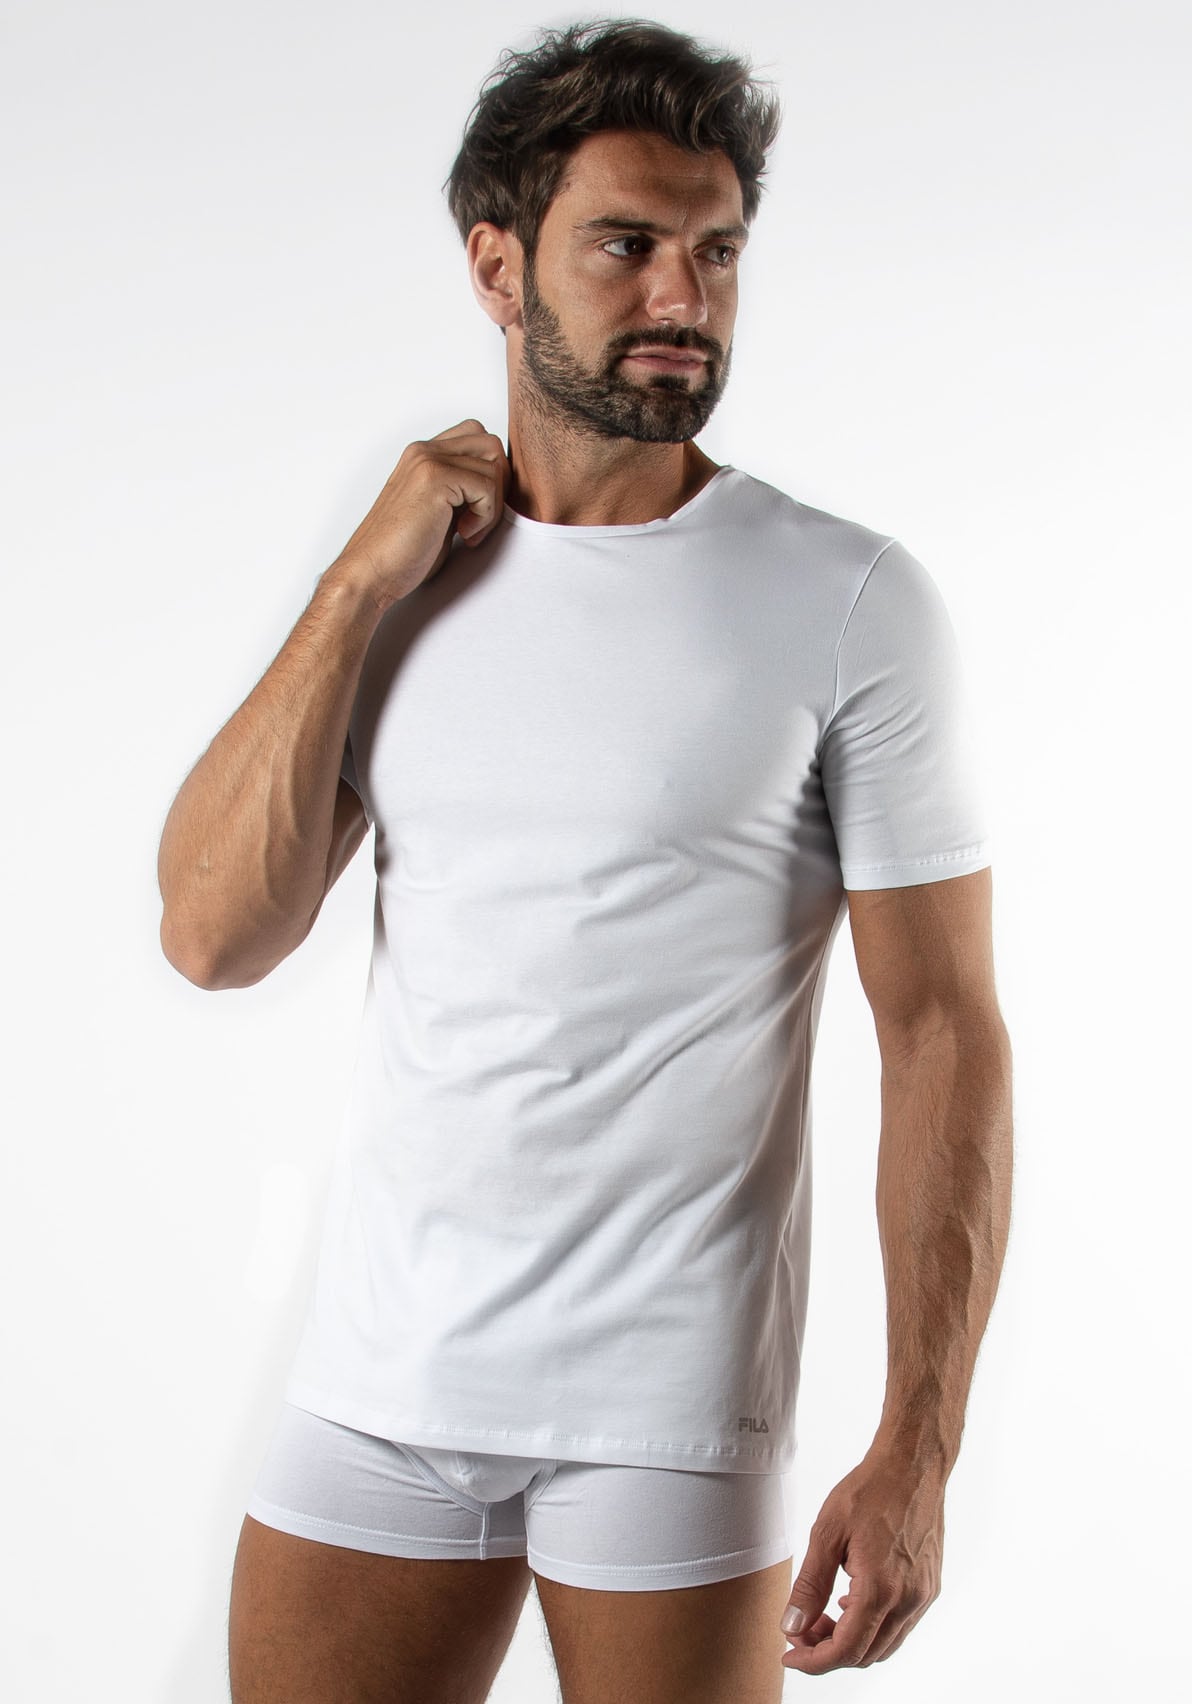 Fila T-Shirt, mit klassischem Rundhalsausschnitt und Kurzarm